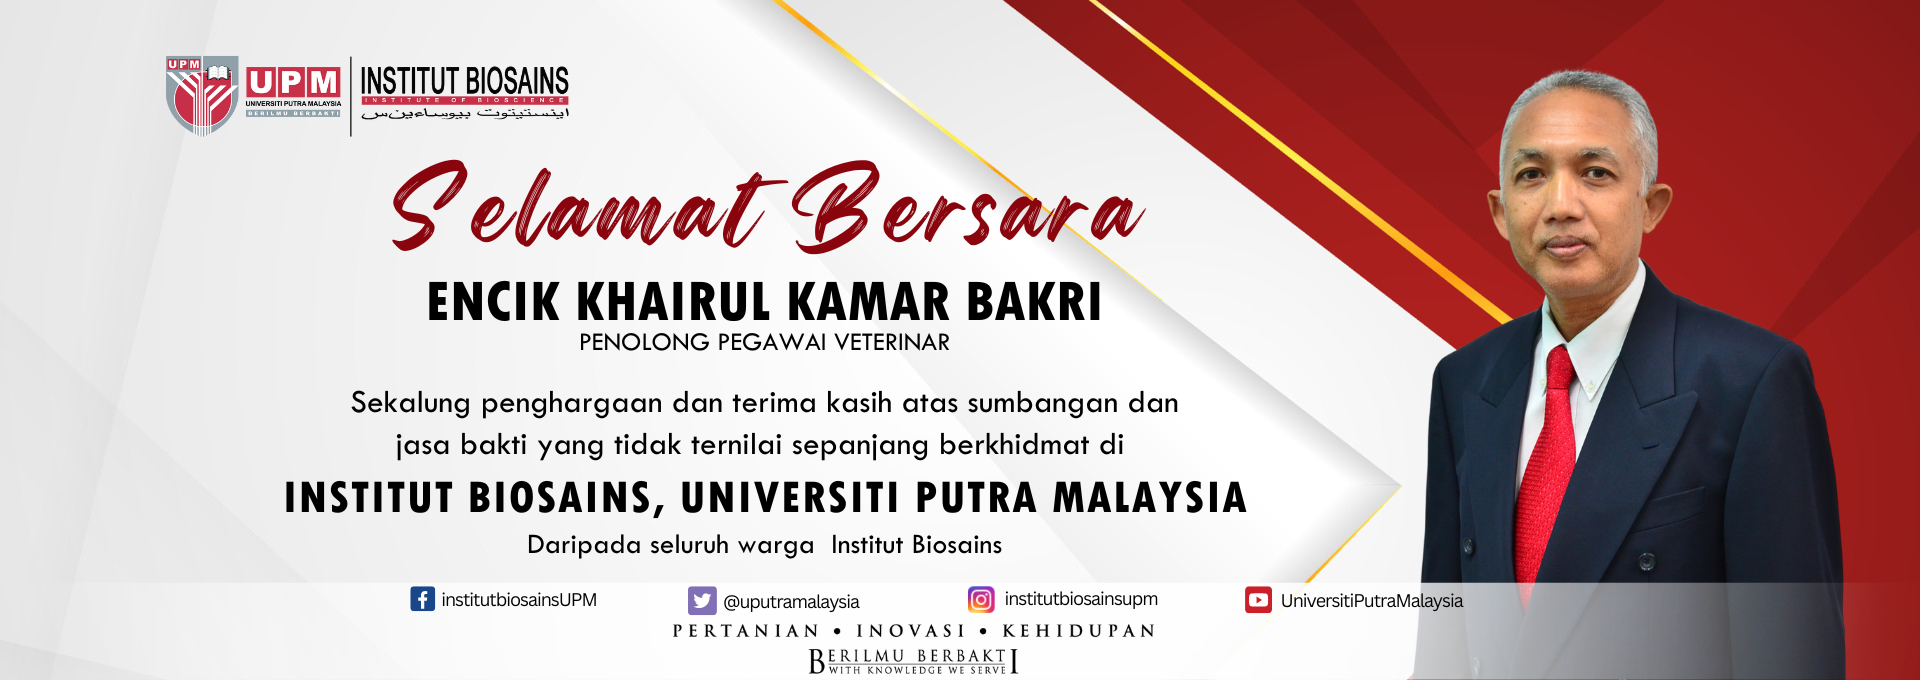 Selamat Bersara Encik Khairul Kamar Bakri